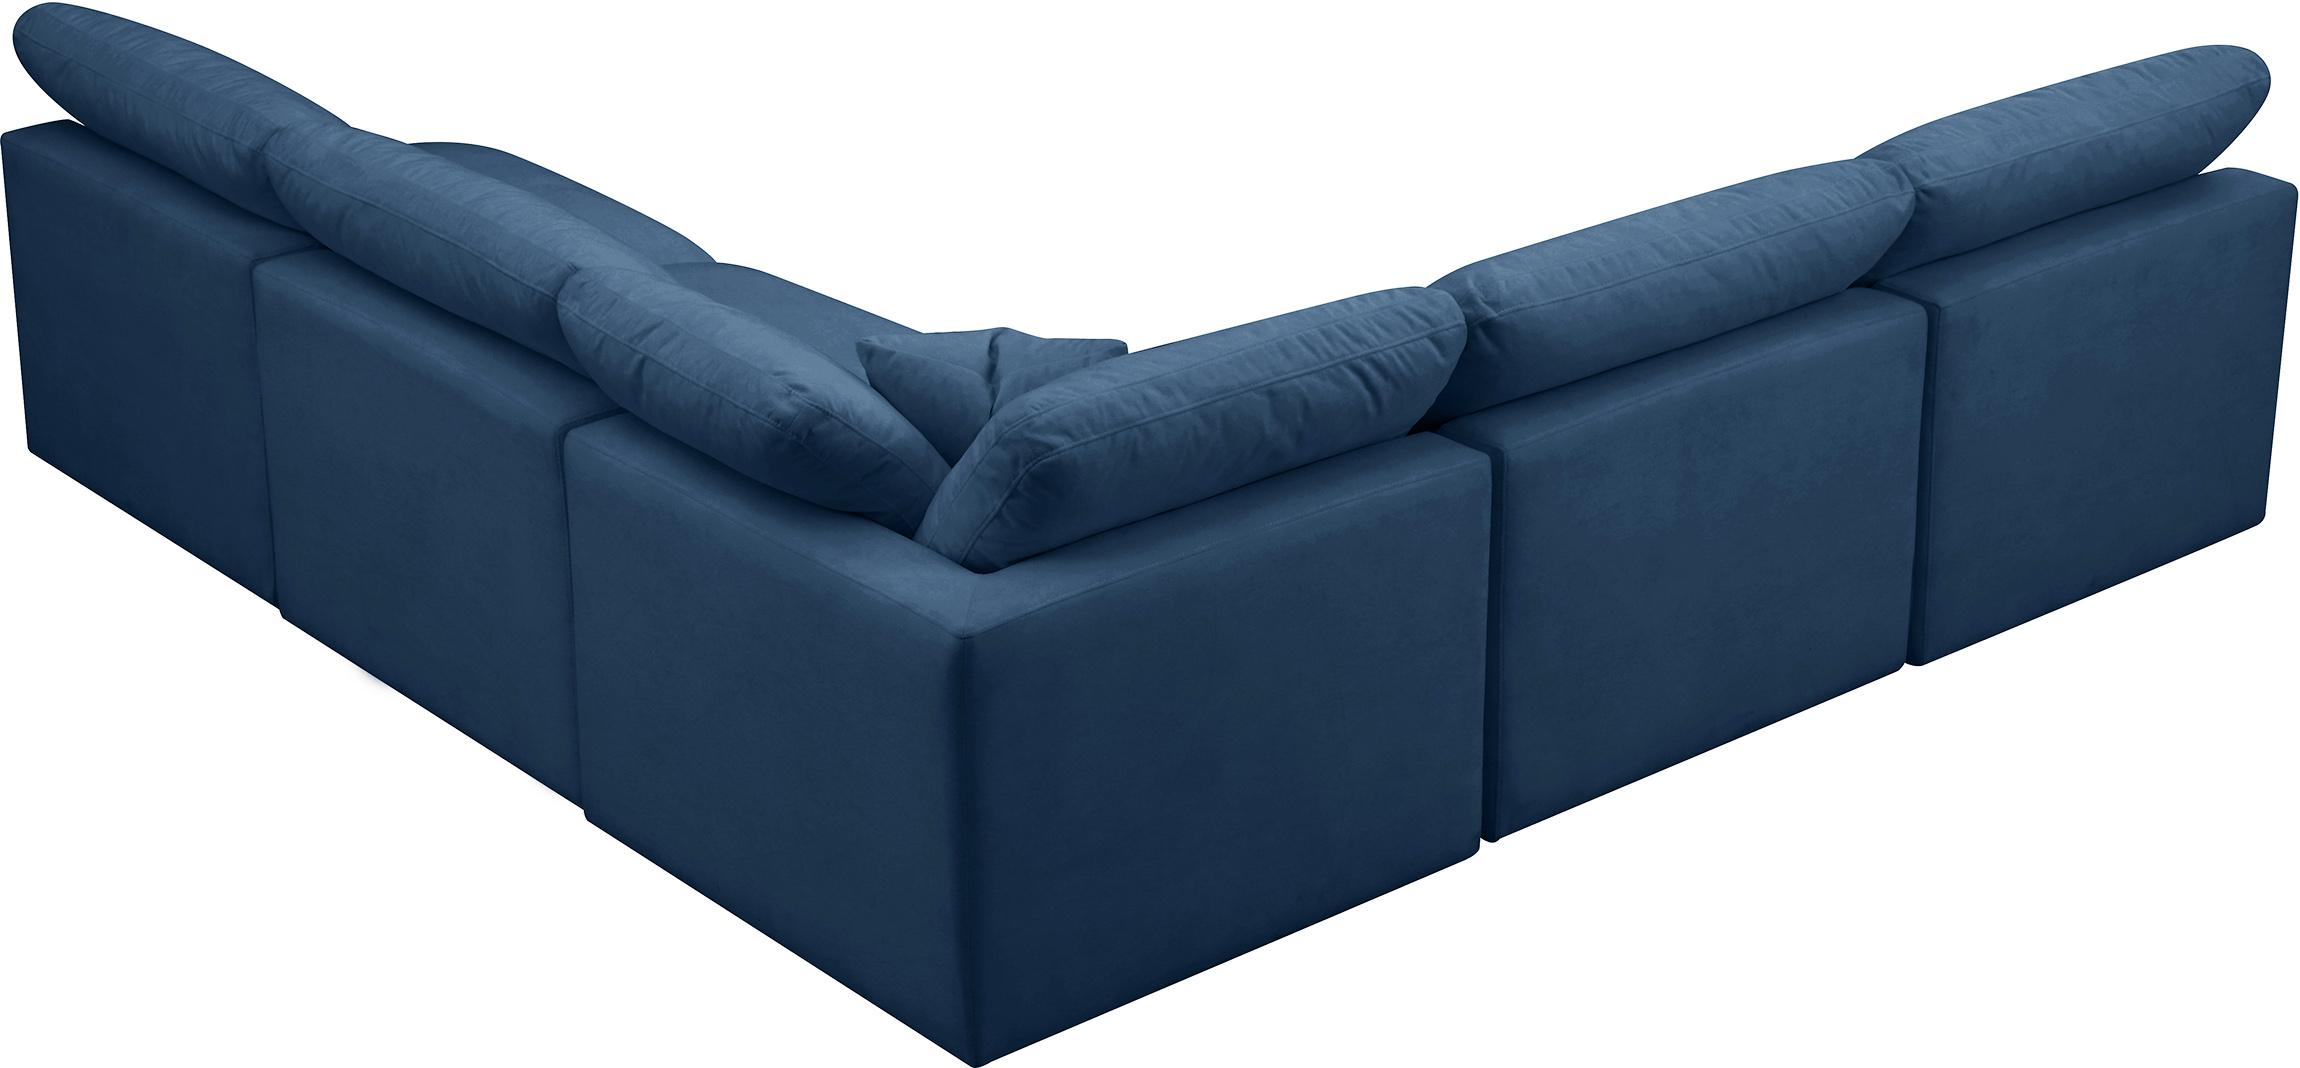 

    
602Navy-Sec5B Meridian Furniture Modular Sectional Sofa
